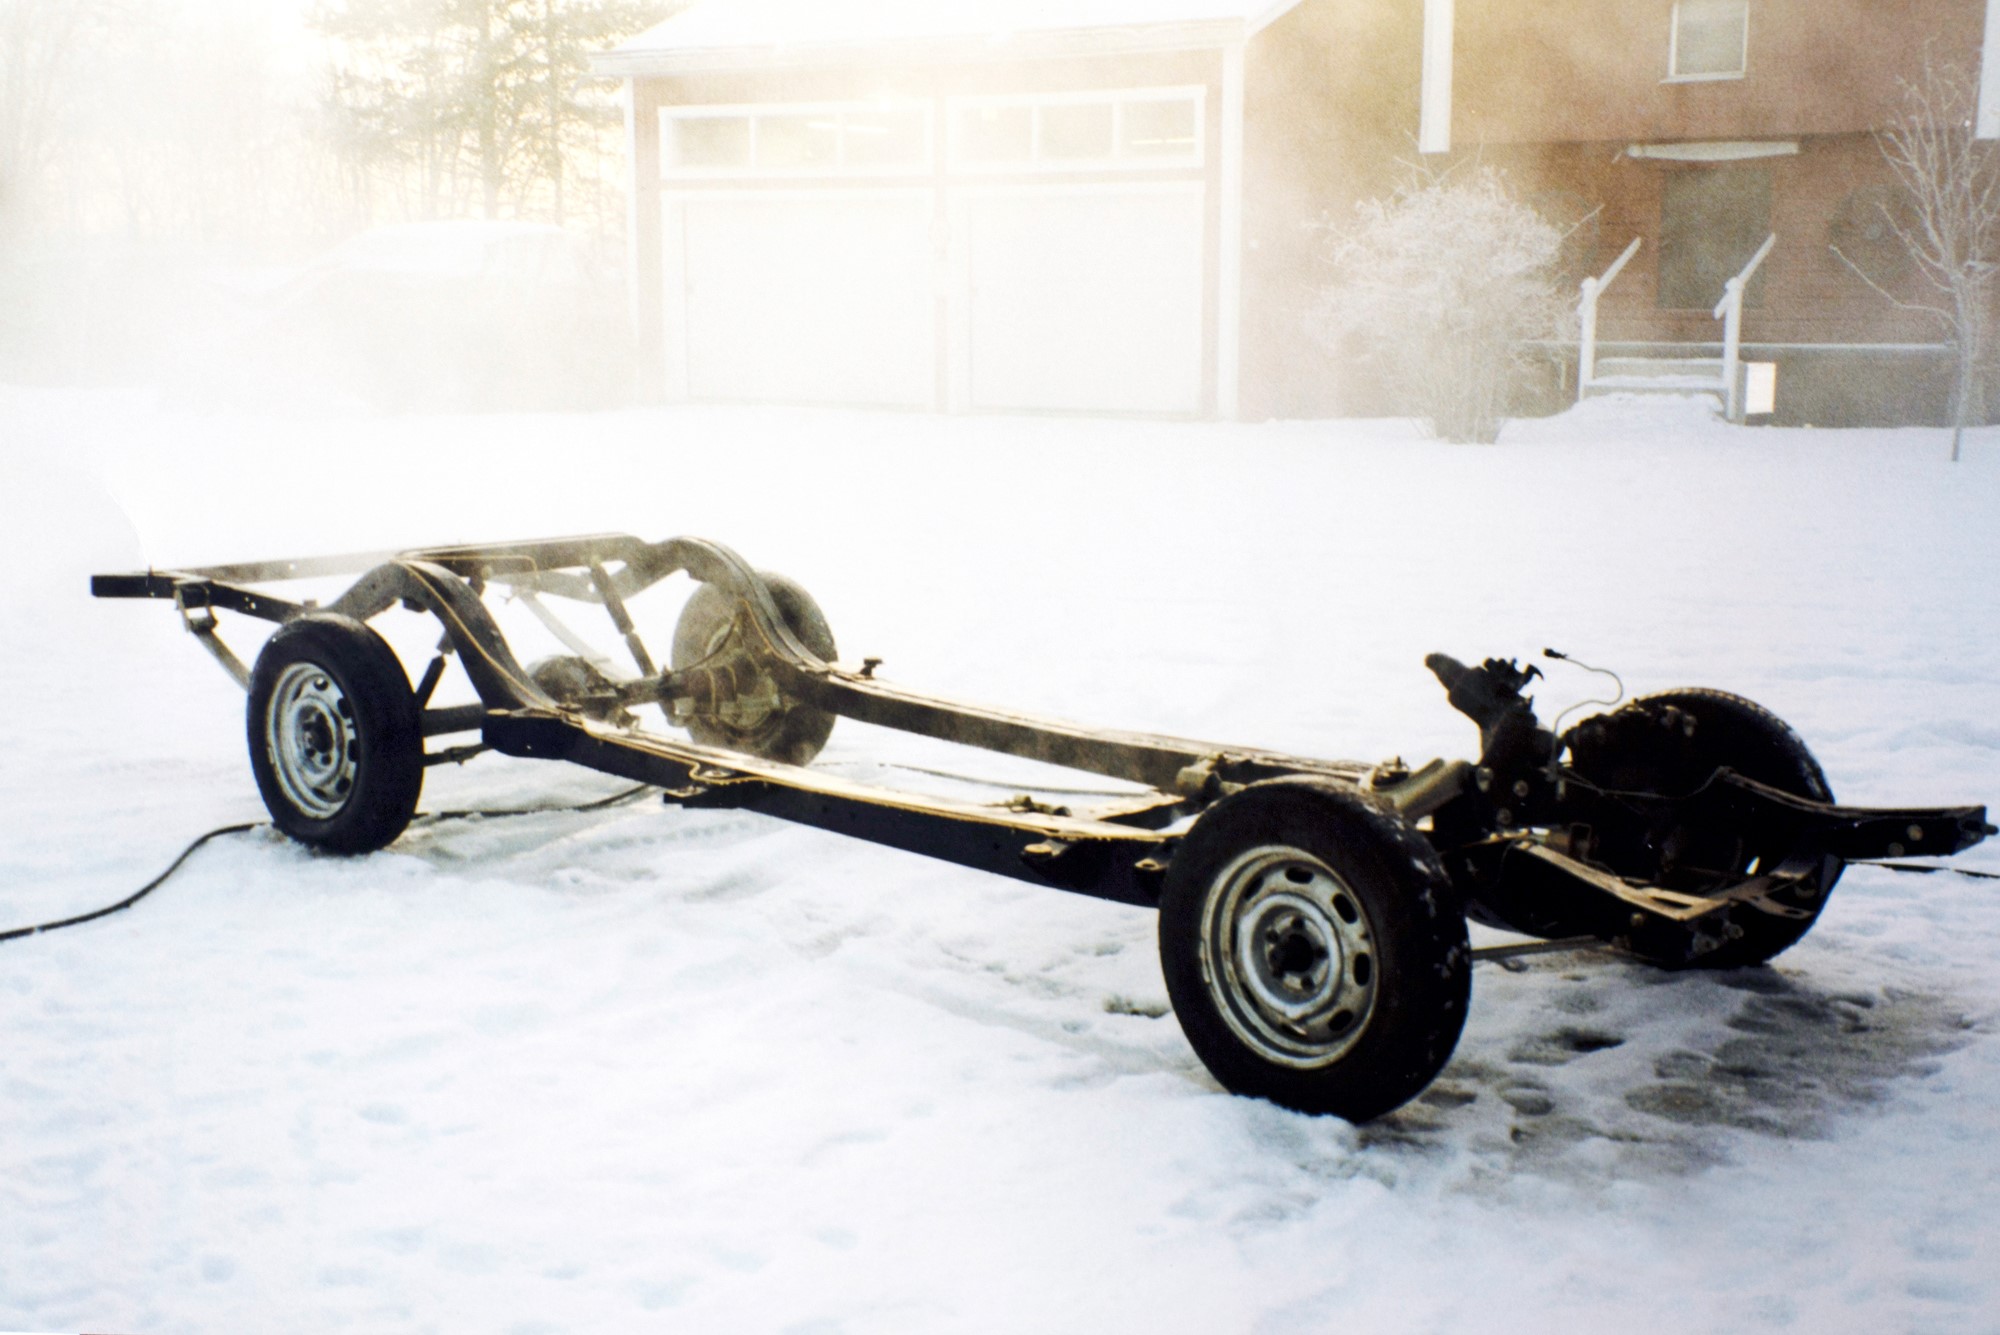 Ramen började blästras i råkallaste vintern 1996, och rullade då på Volvofälgar.